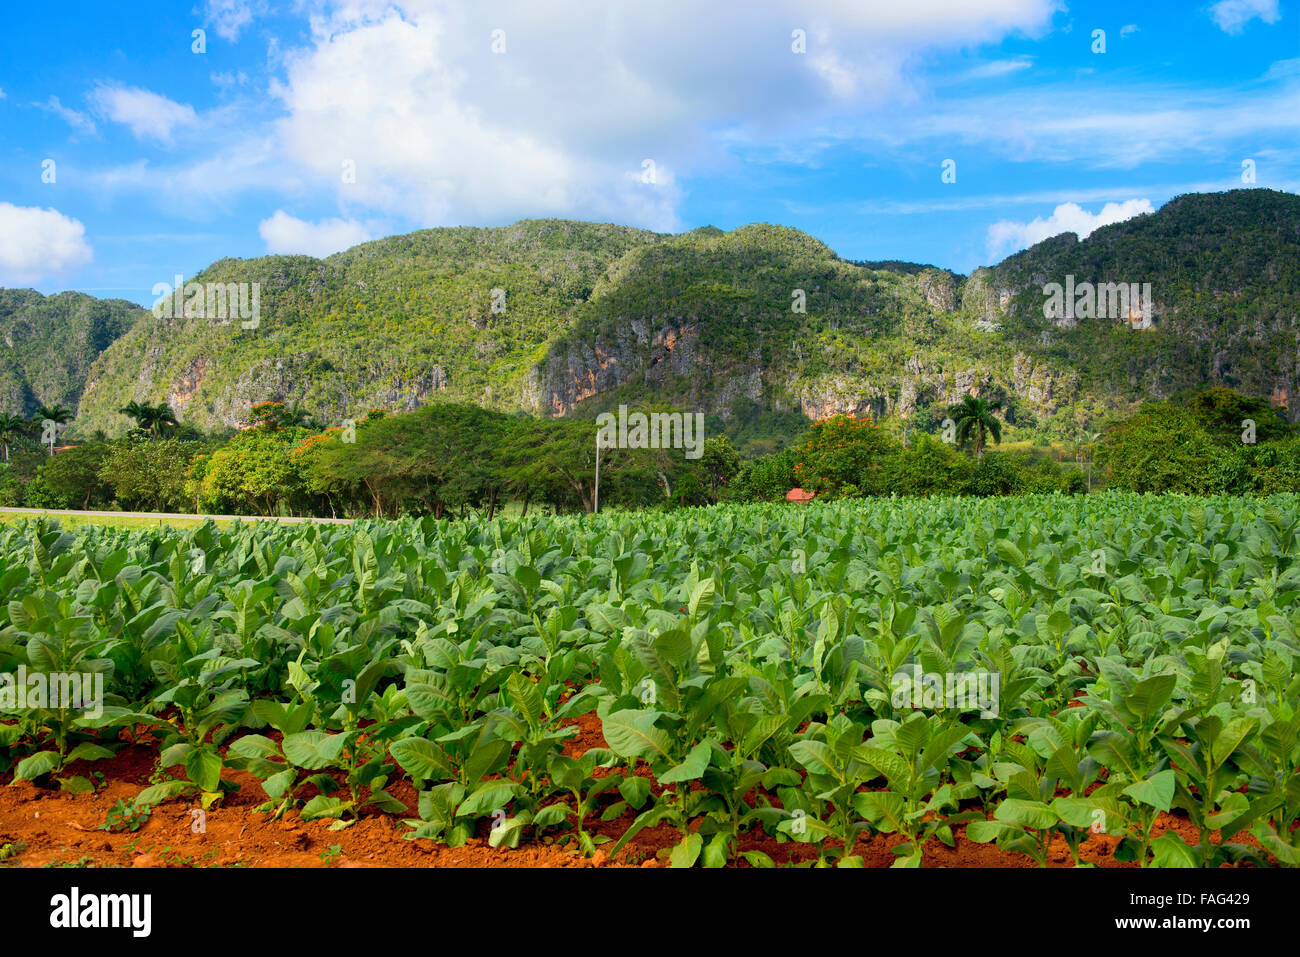 Vinales Cuba, Tobacco Growing Farm, Plantation in Valle de Vinales Stock Photo